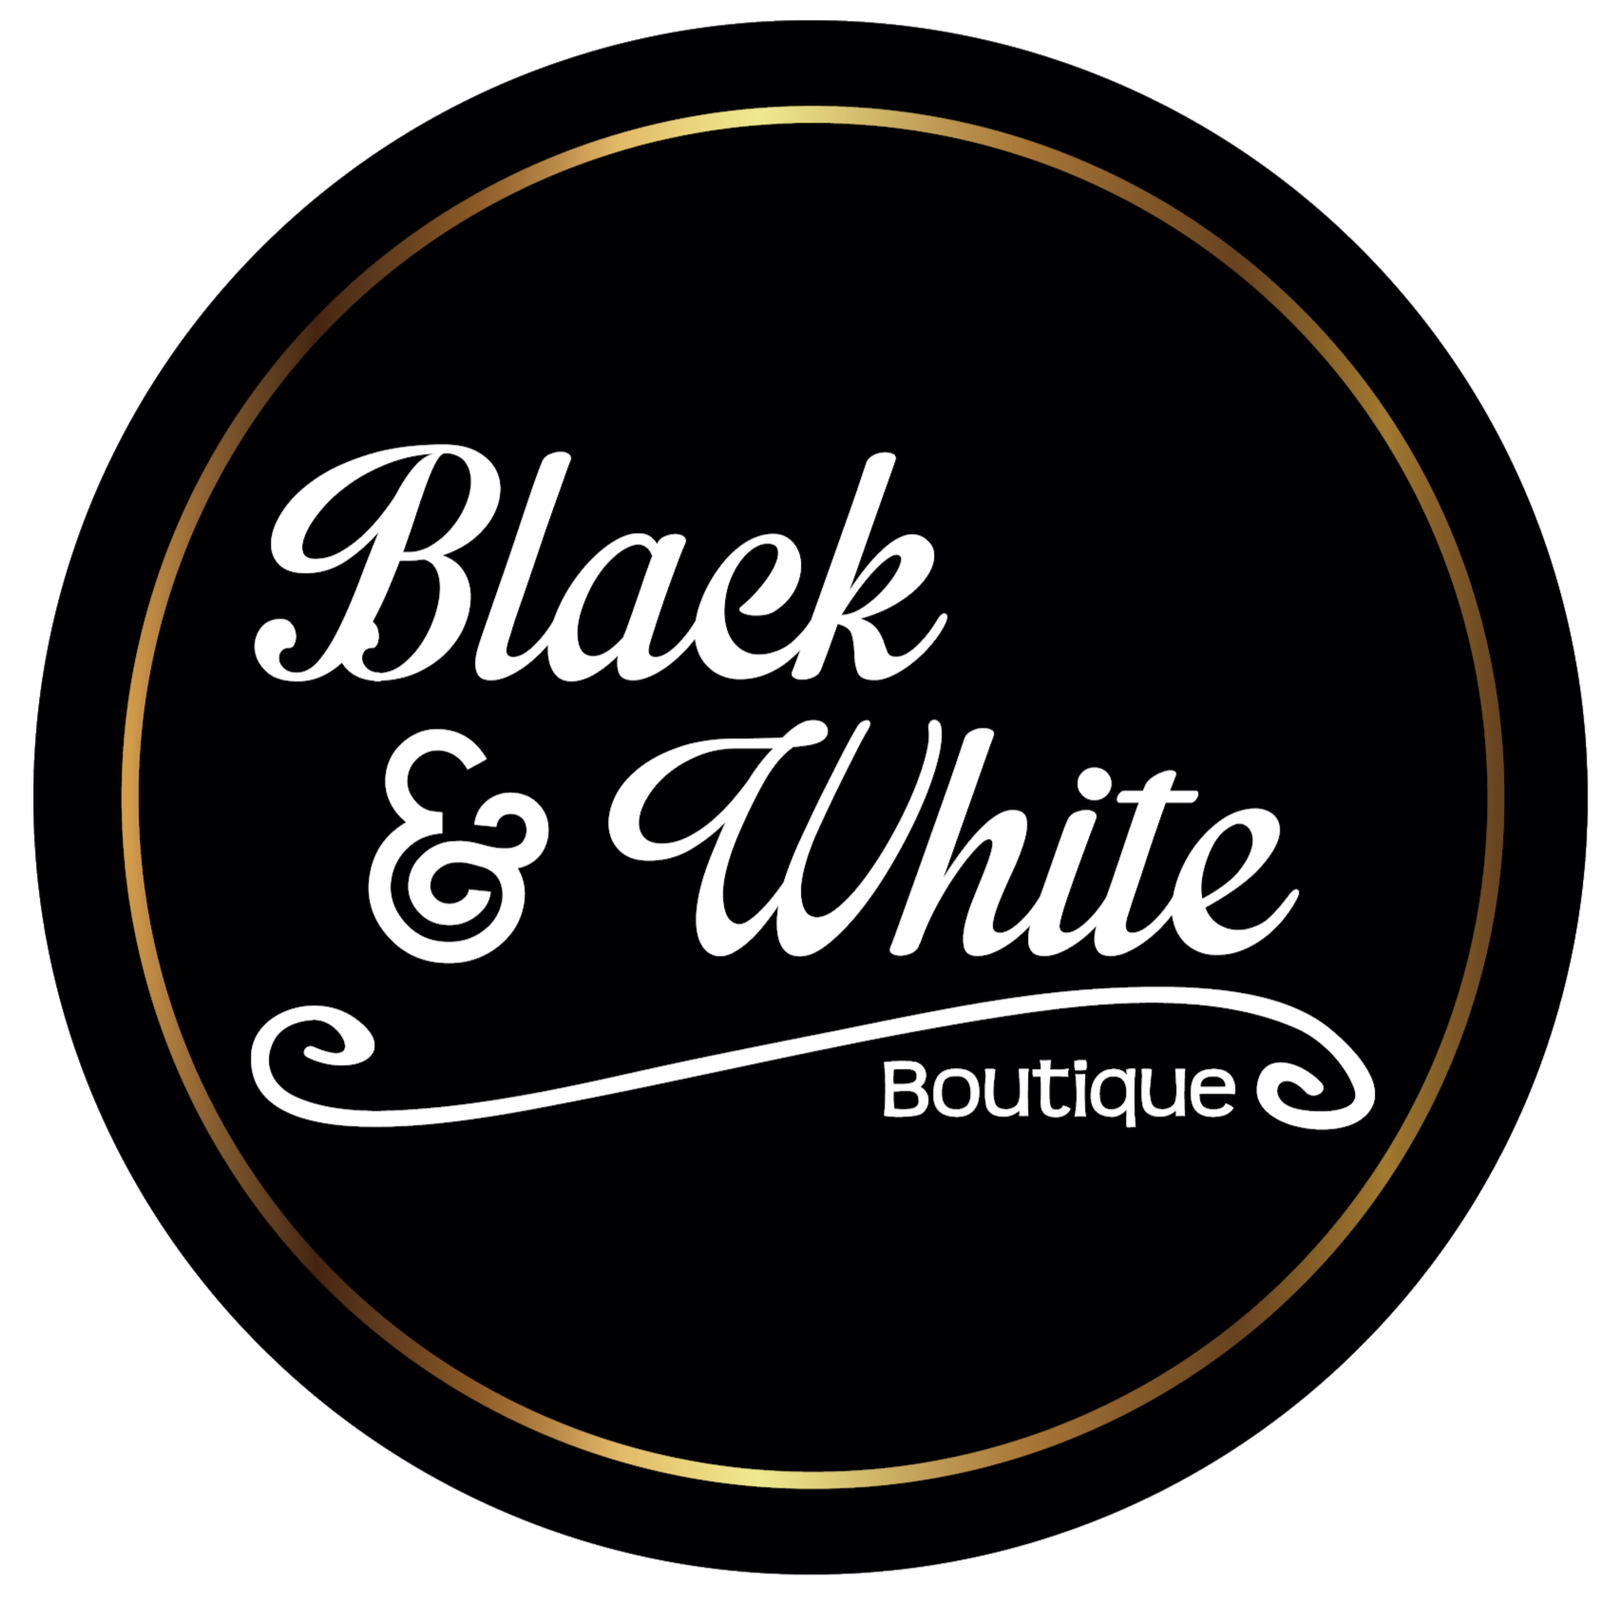 Black & White Boutique